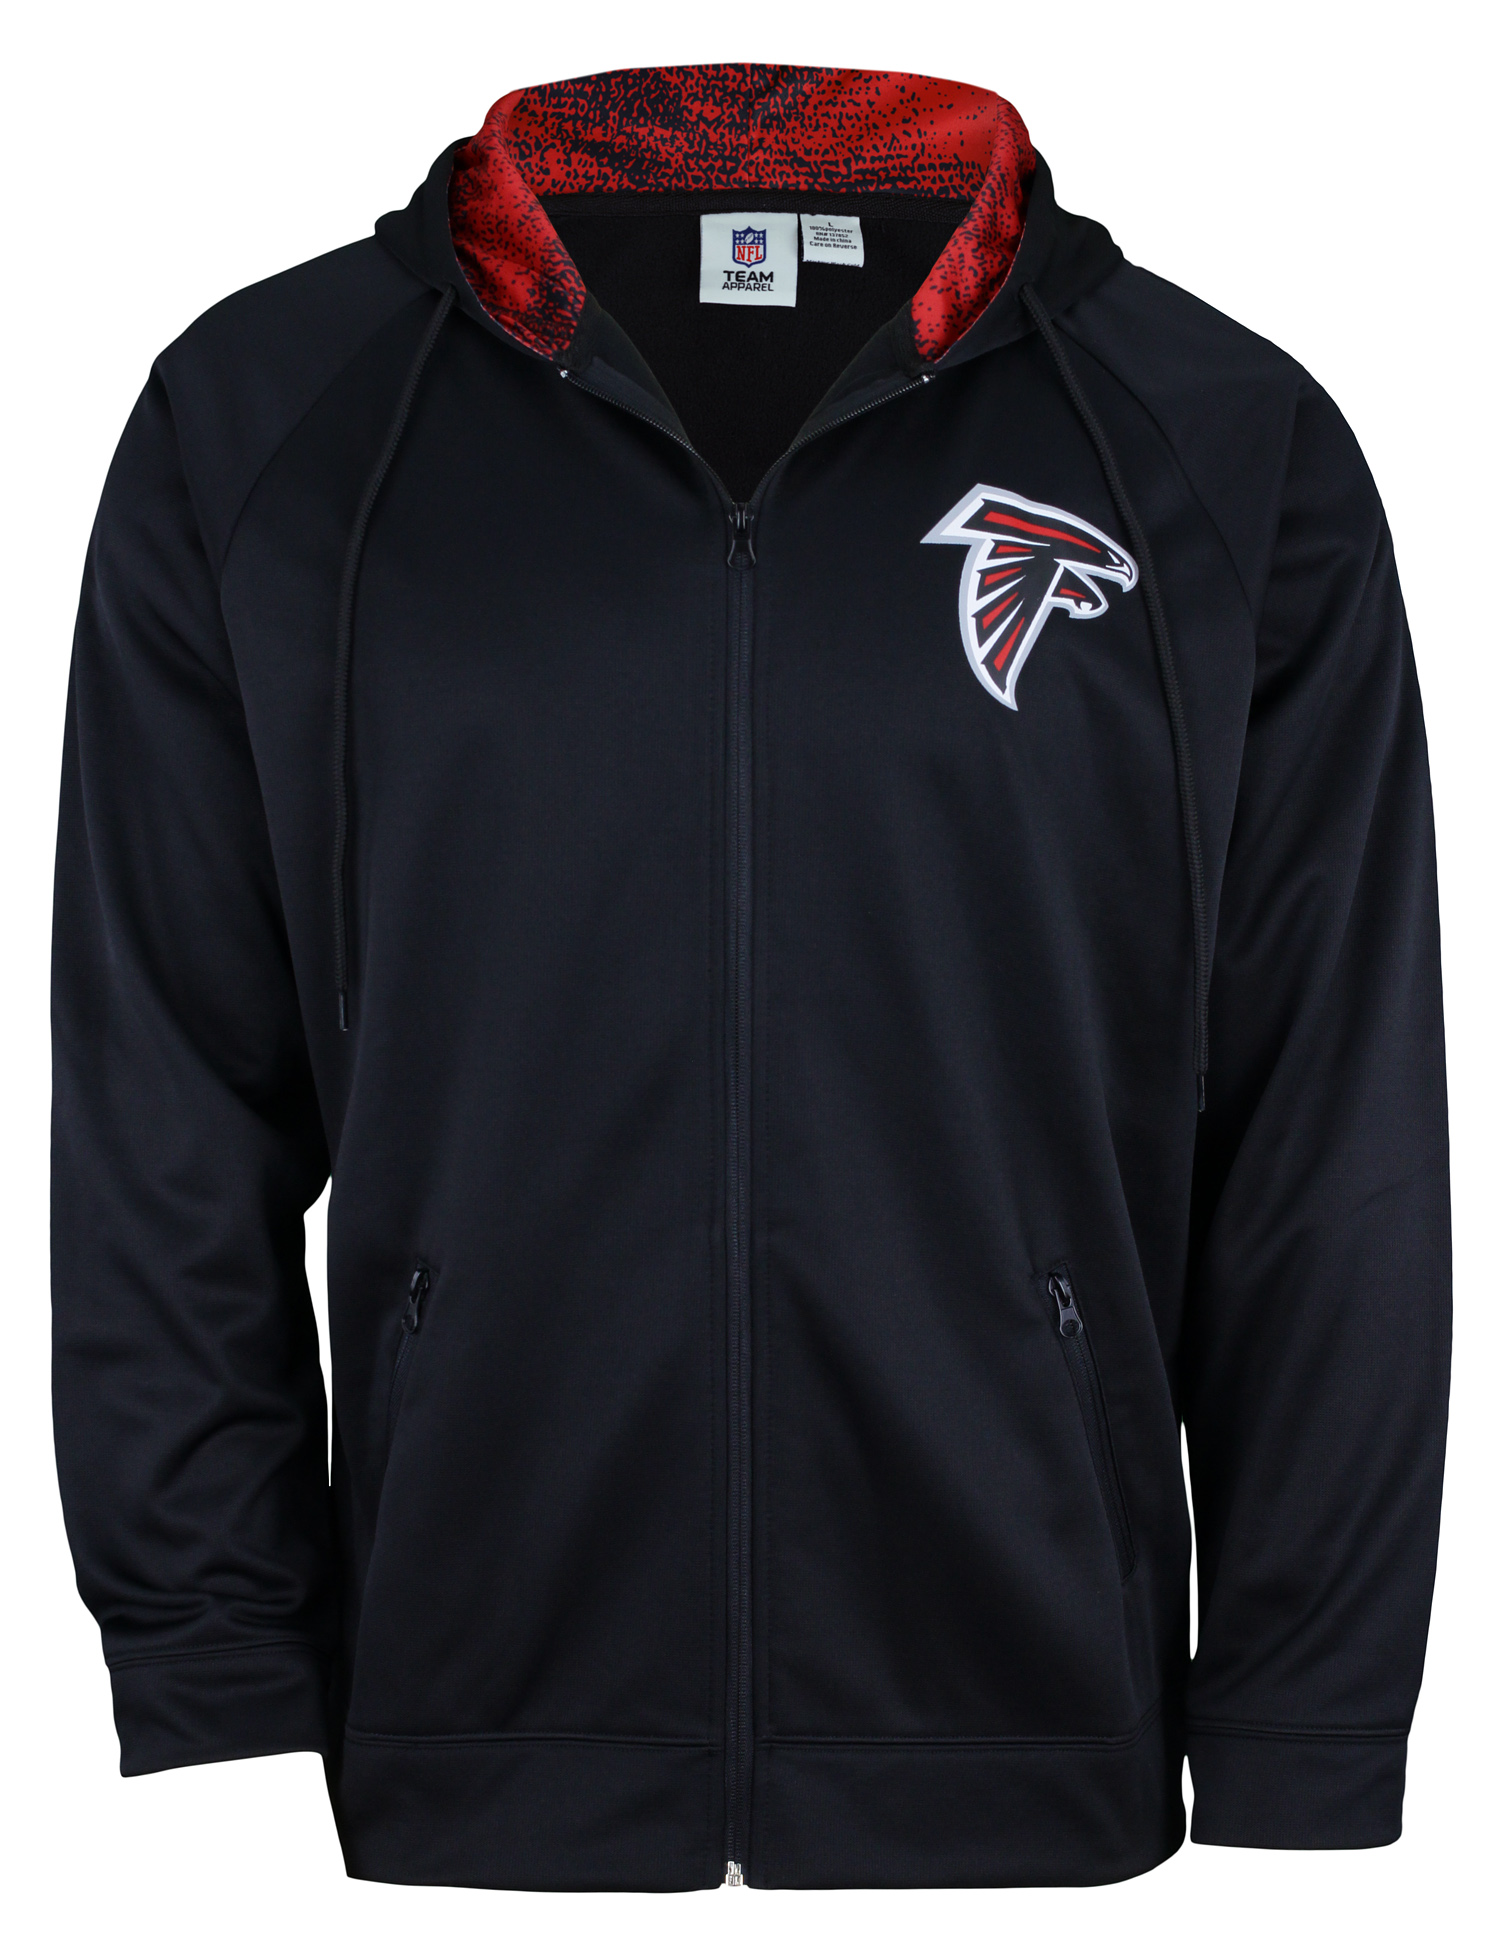 Zubaz NFL Men's Atlanta Falcons Full Zip Performance Fleece Zip Up ...